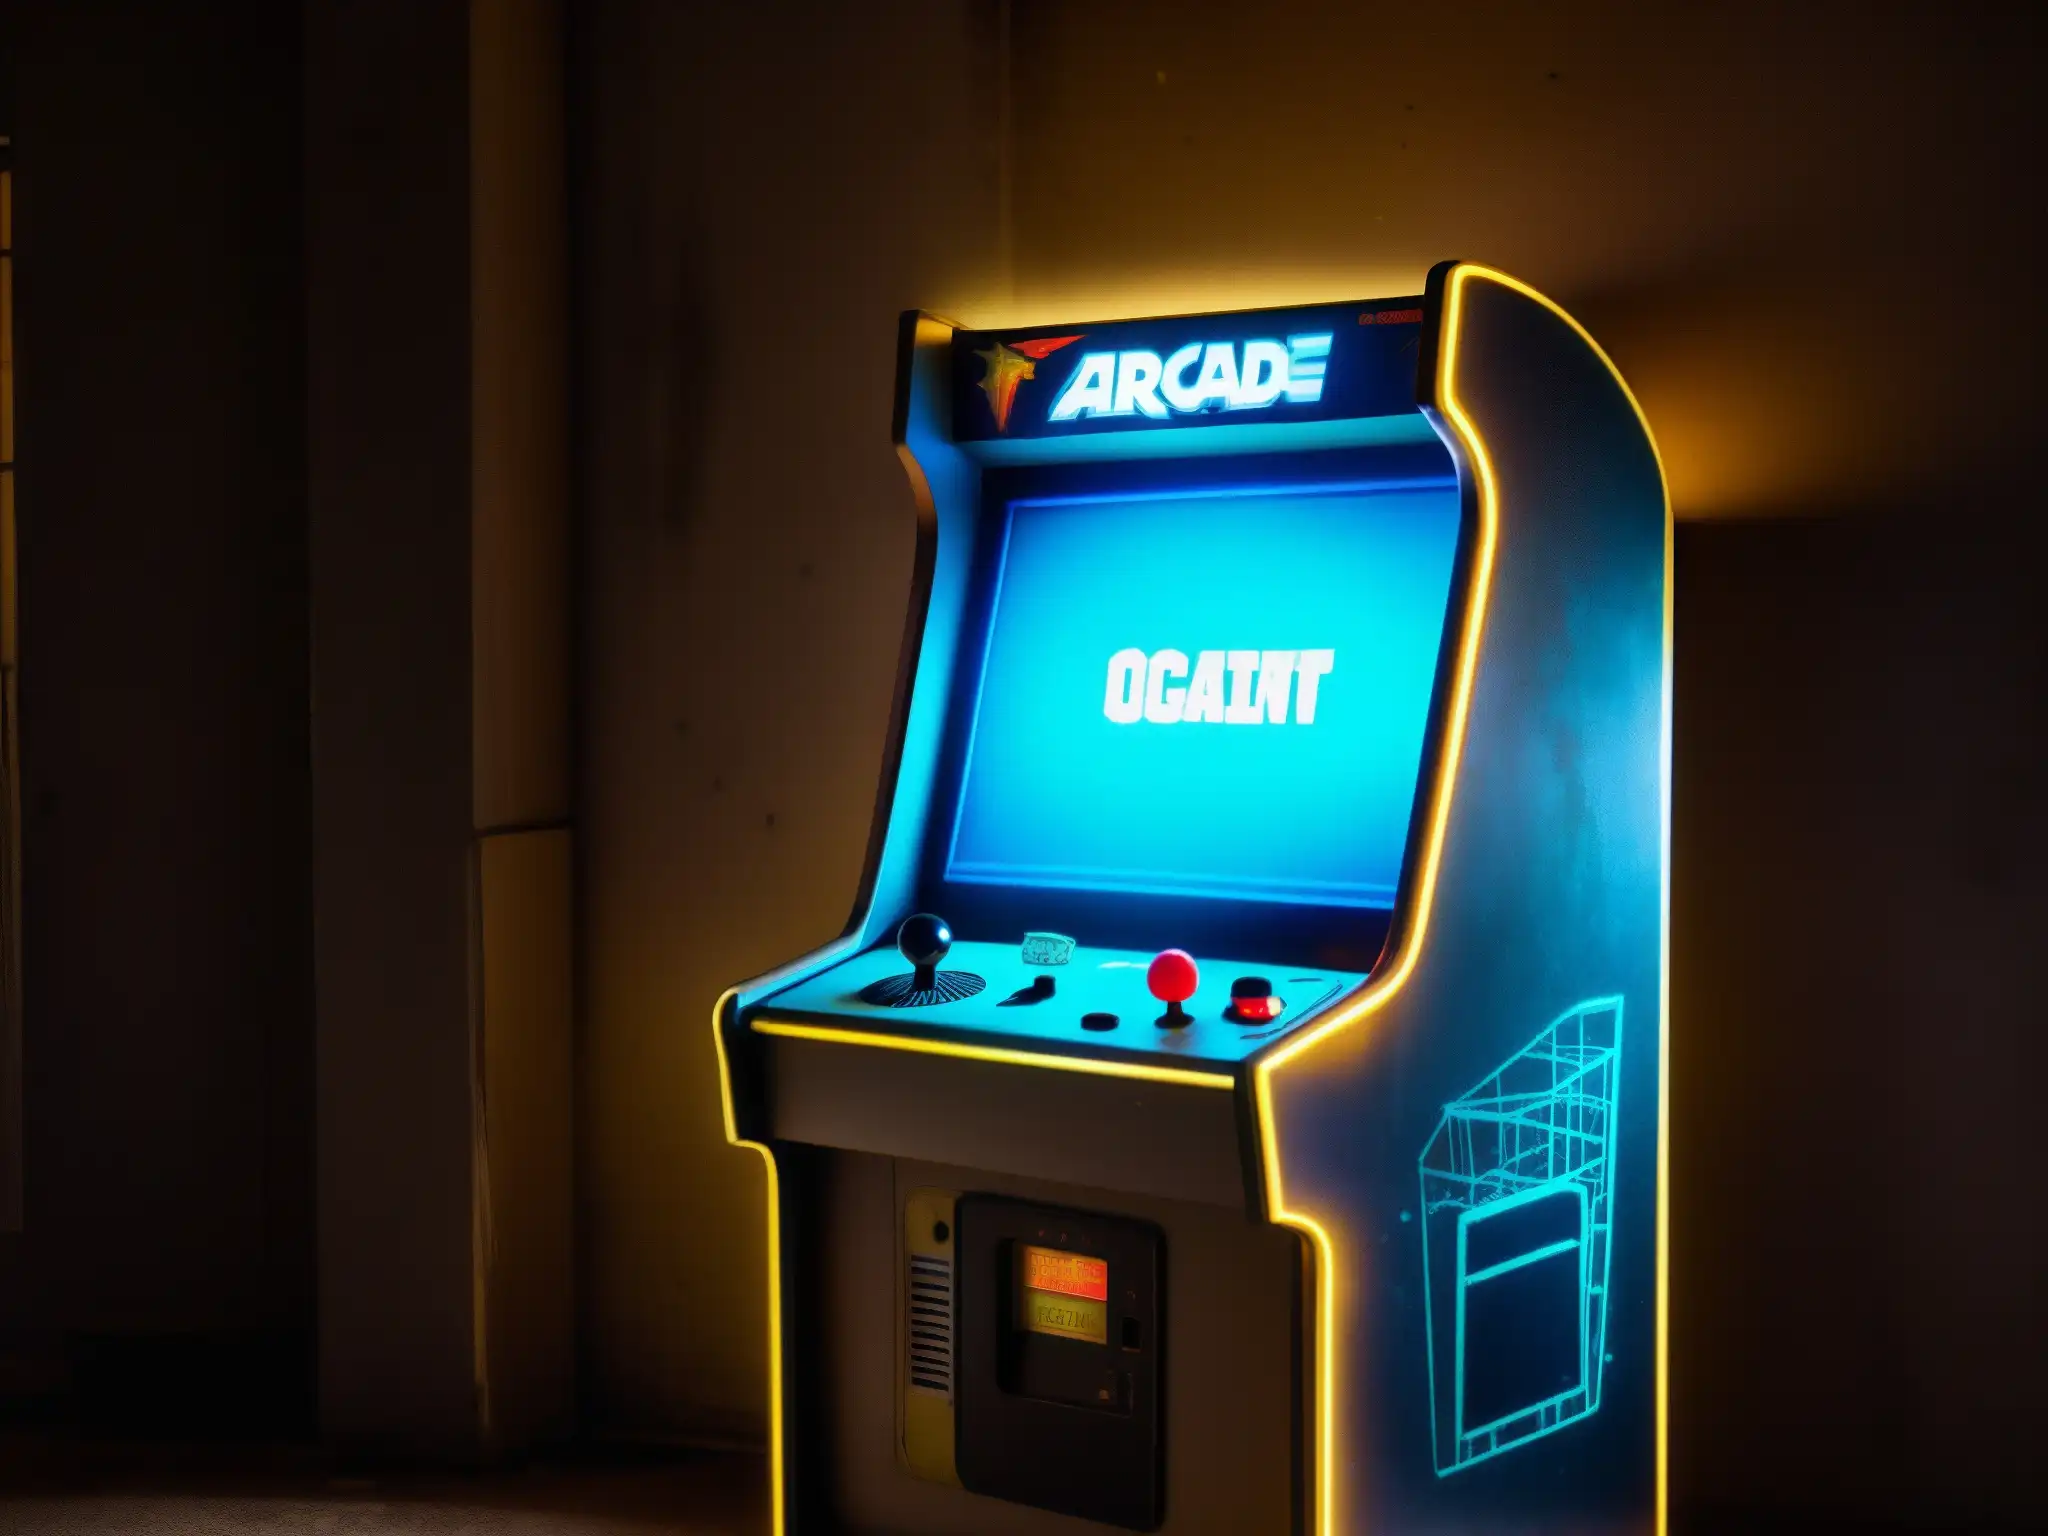 Una reliquia abandonada: un gabinete de arcade polvoriento y solitario en una habitación tenue, evocando leyendas urbanas de videojuegos abandonware